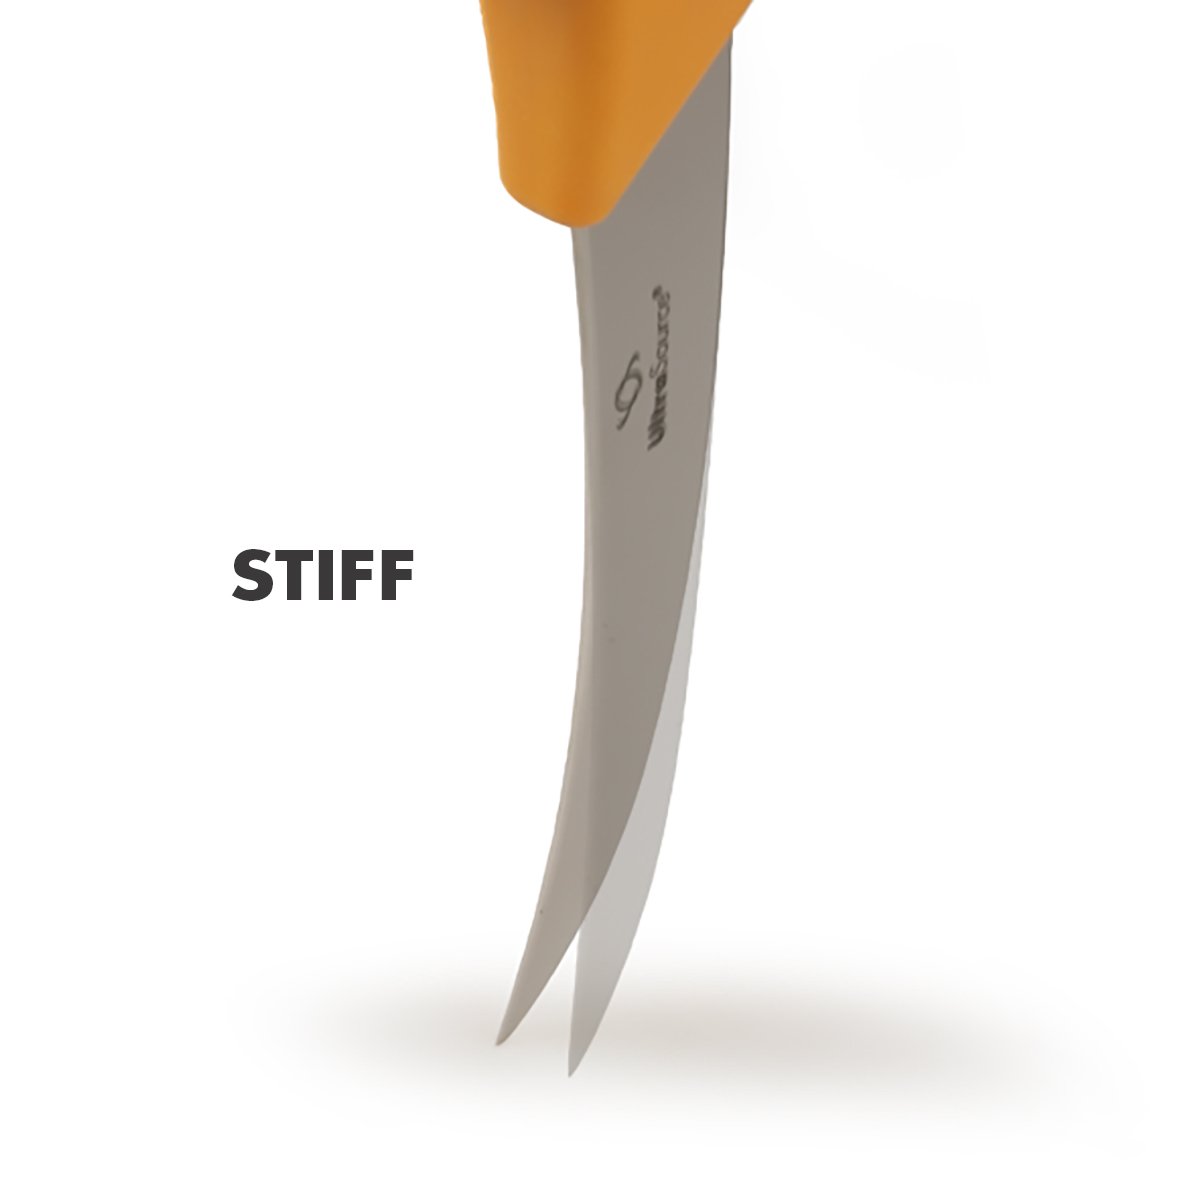 ULTRASOURCE Boning Knife, 5" Curved/Stiff Blade, Polypropylene Handle